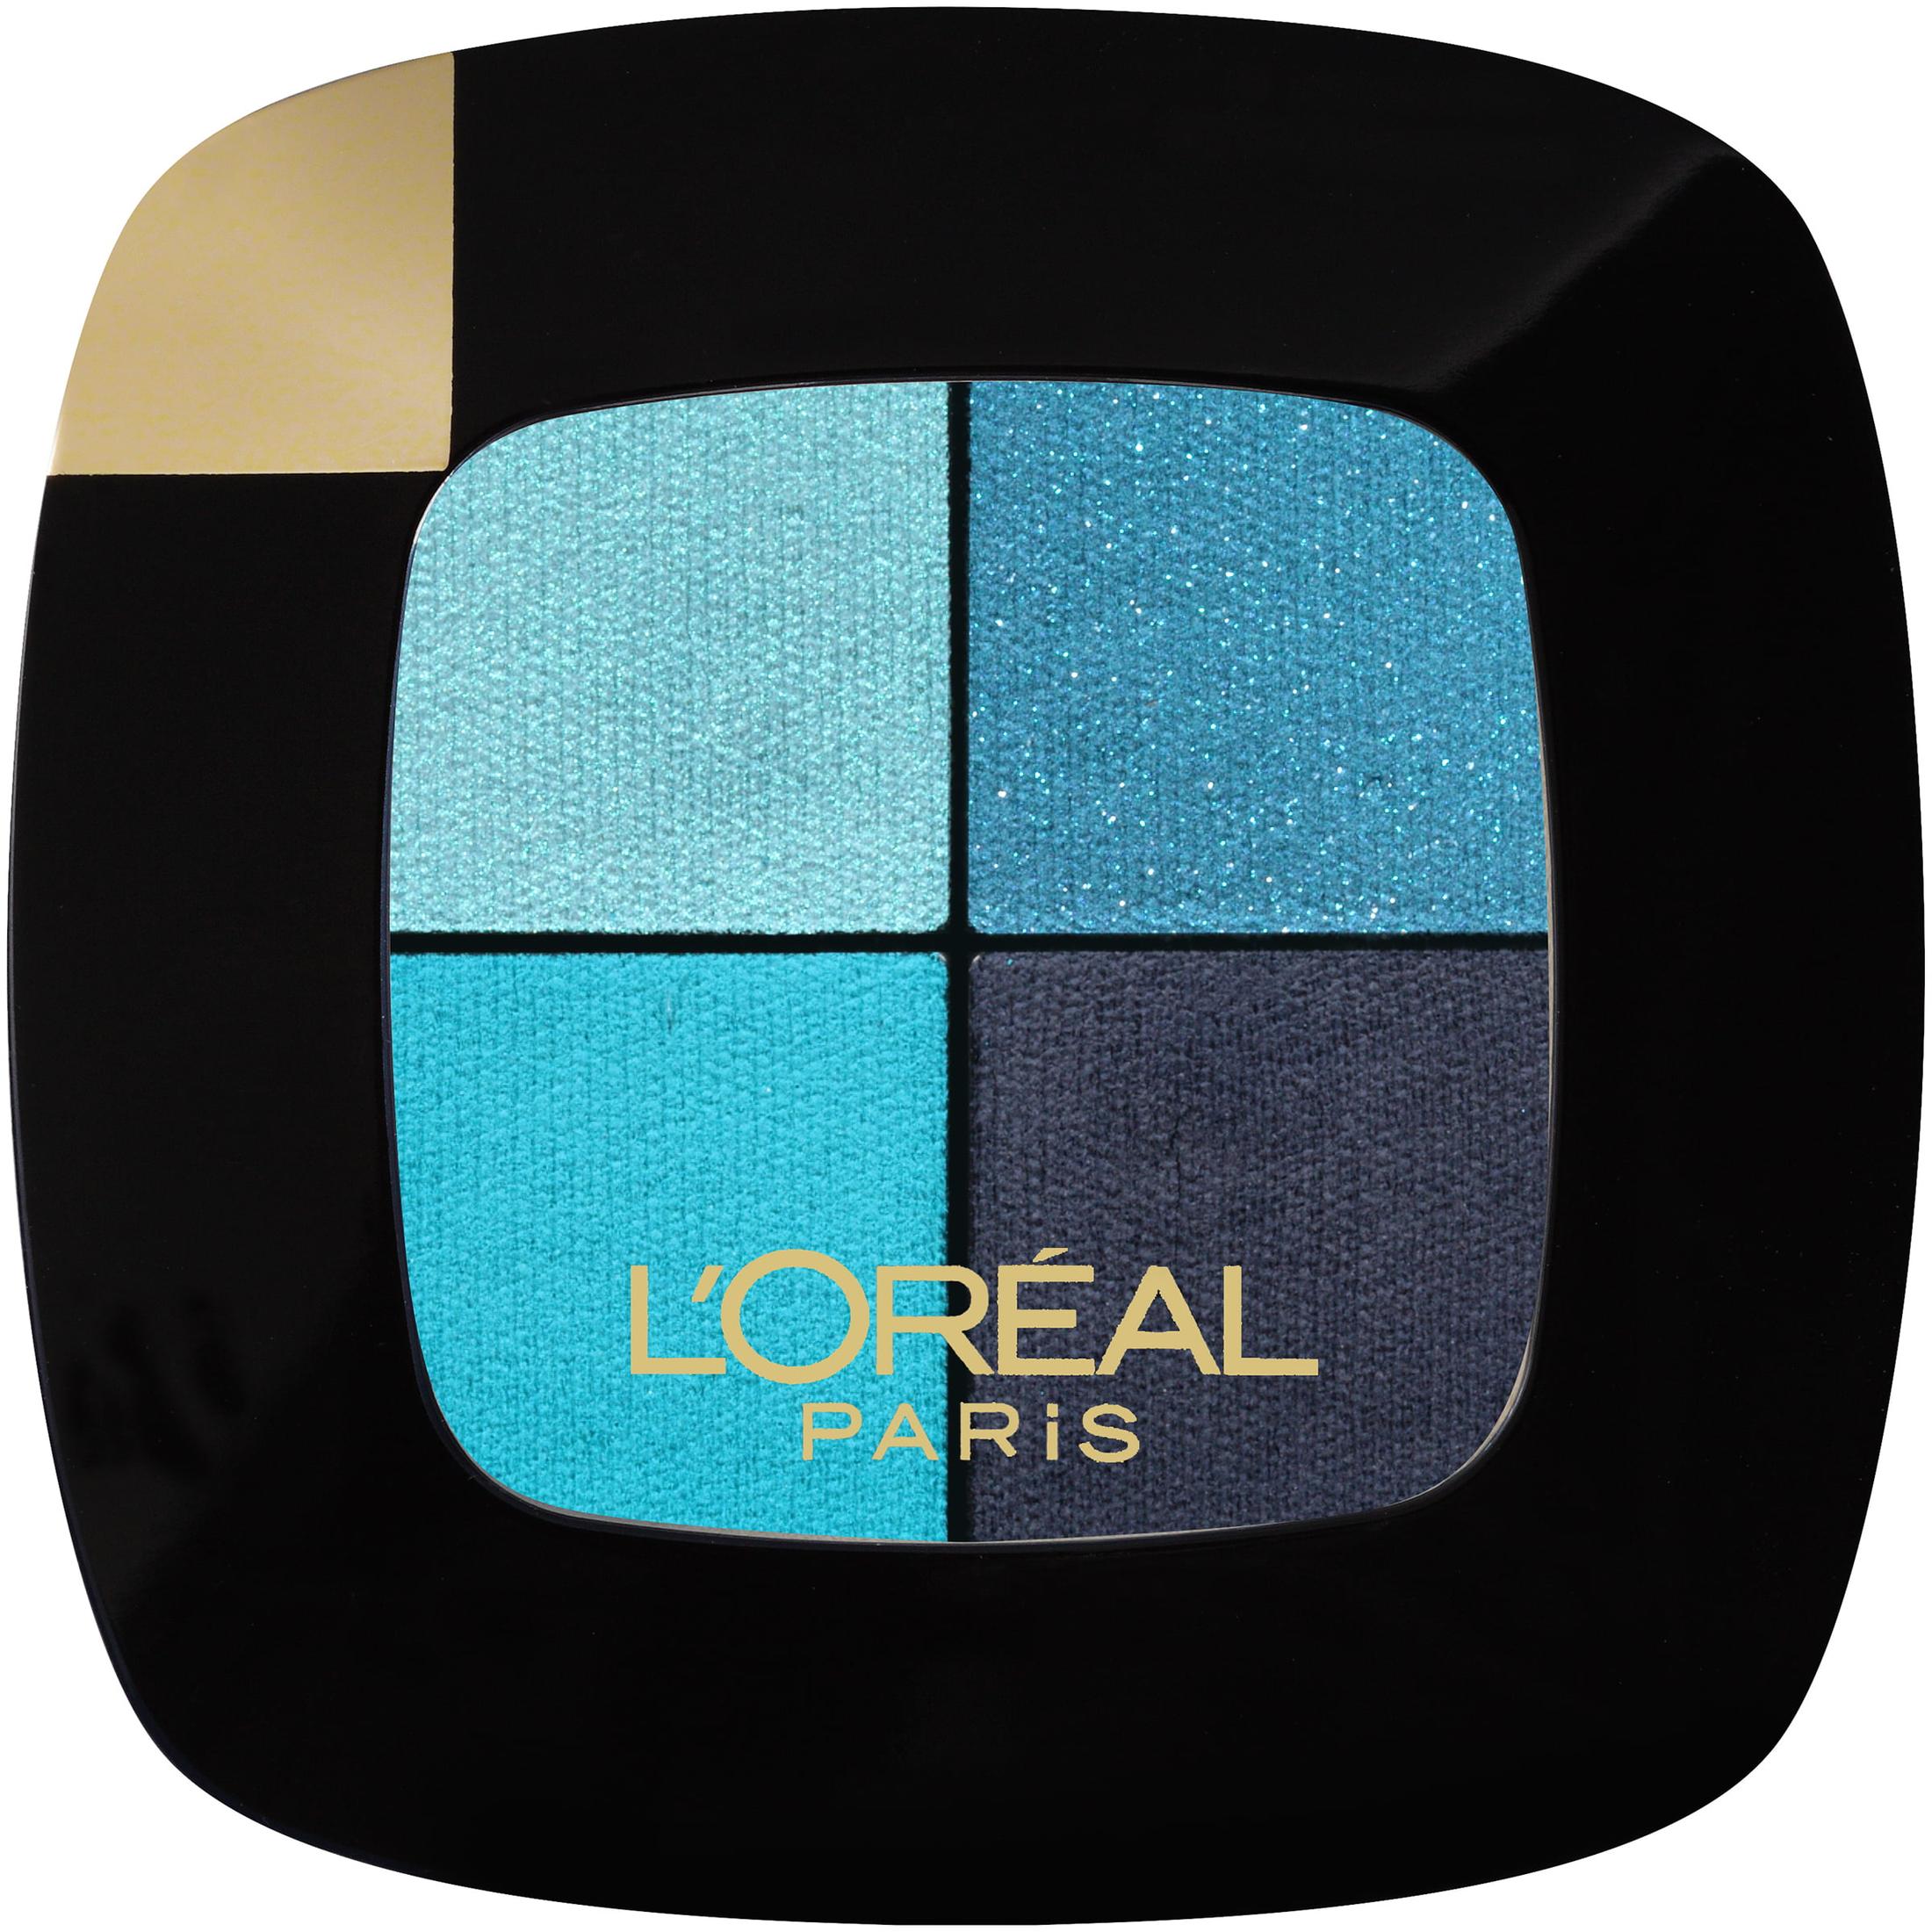 L'Oreal Paris Colour Riche Pocket Palette Eye Shadow, Avant-Garde Azure - image 1 of 4